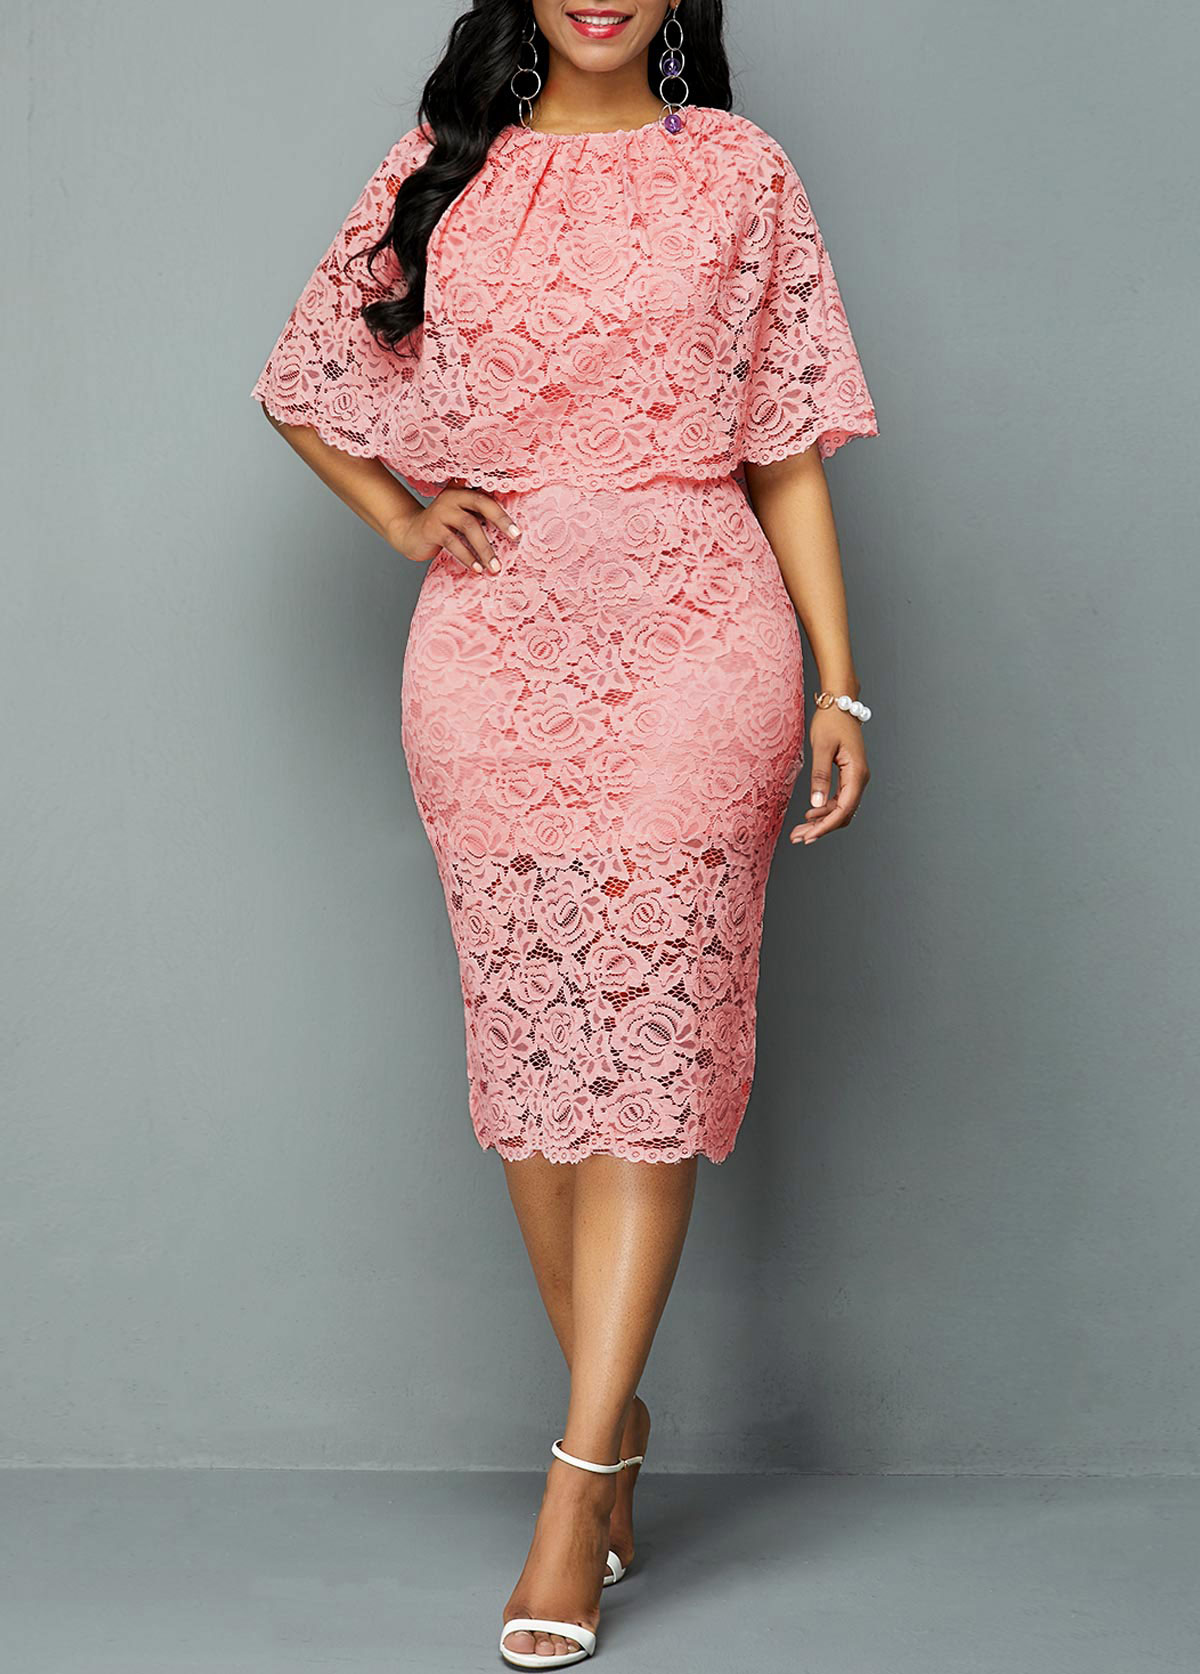 rosewe pink dress